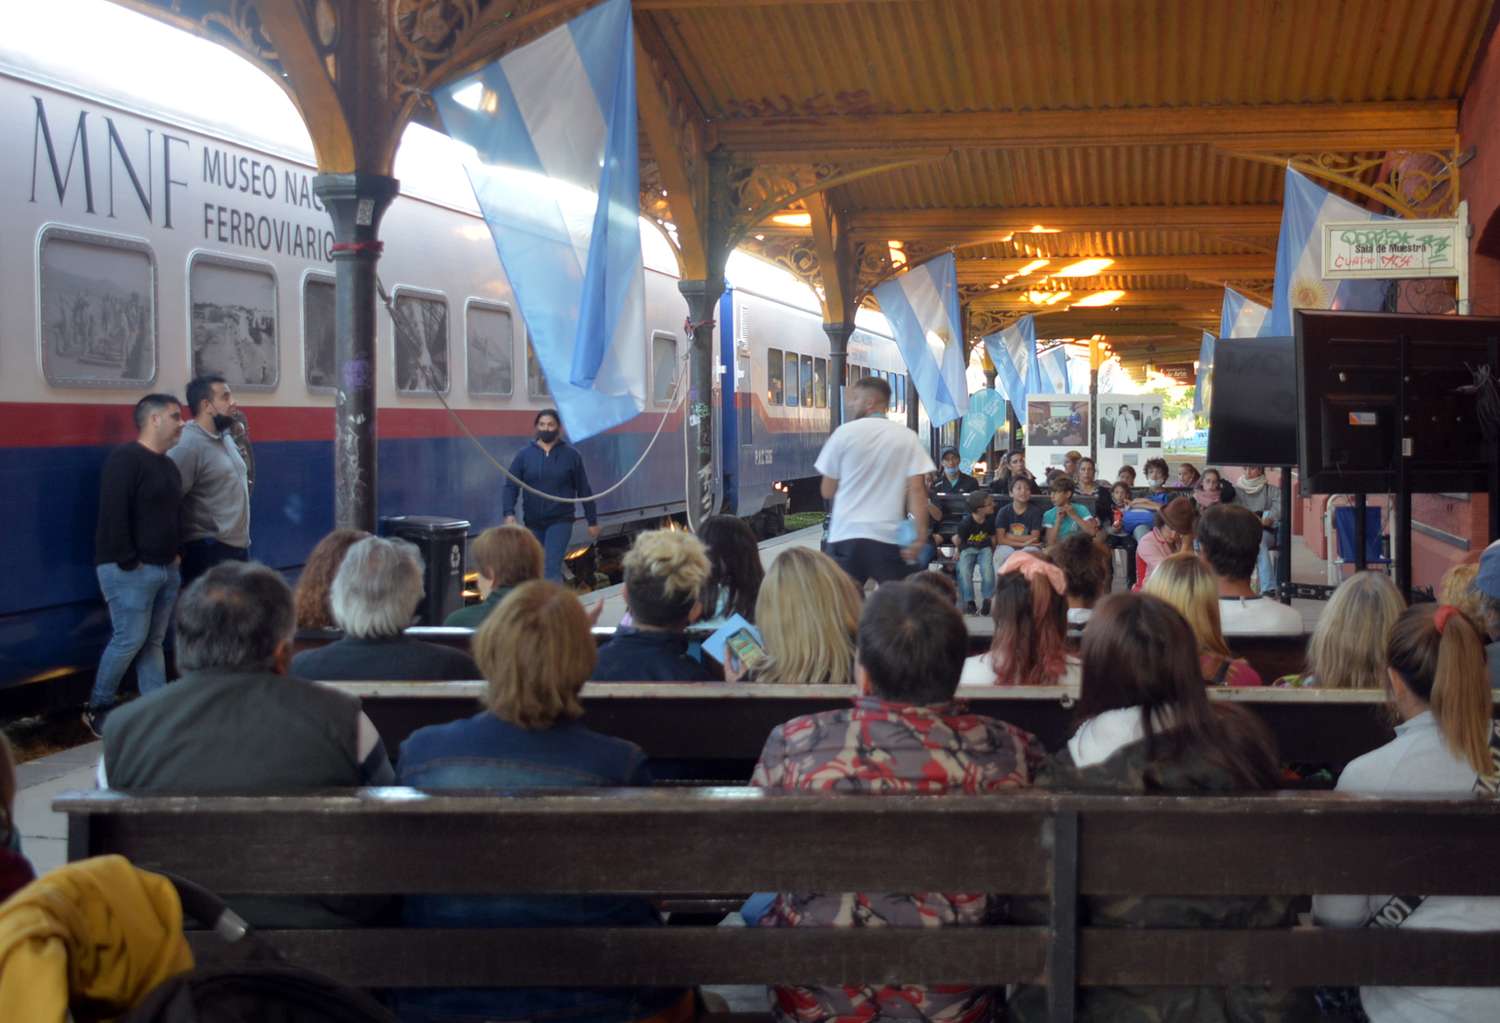 Rodando cultura e historia, el tren Museo itinerante en Tandil superó las expectativas